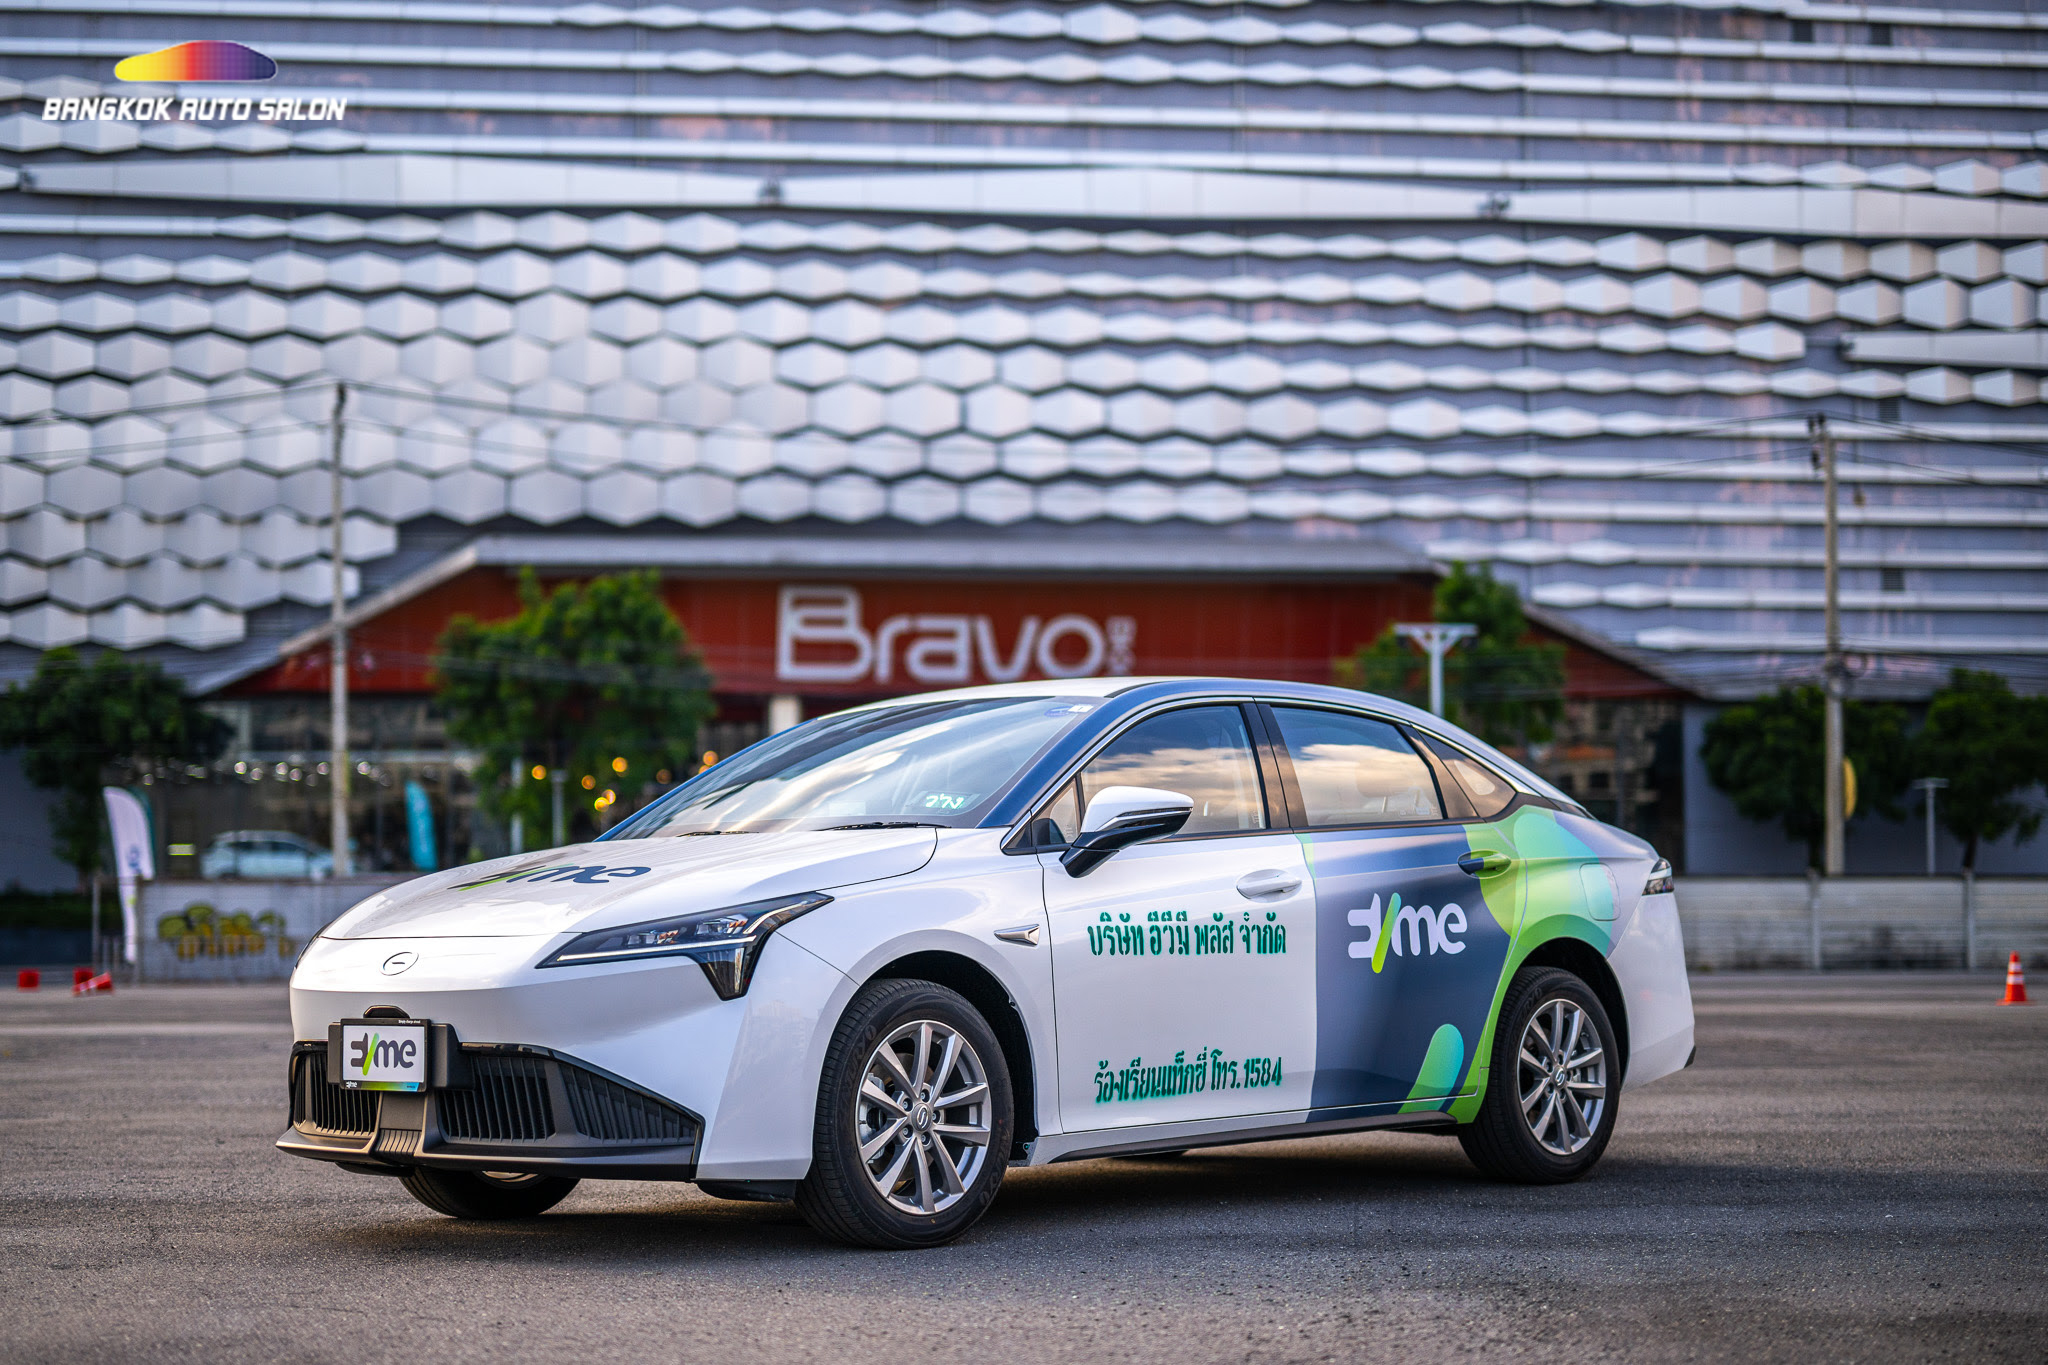 อีวี มี ส่งมอบรถยนต์ไฟฟ้าให้ผู้ประกอบการแท็กซี่ ตั้งเป้าเพิ่มจำนวน EV ในระบบขนส่งสาธารณะไทย หนุนสังคมคาร์บอนต่ำยั่งยืน 